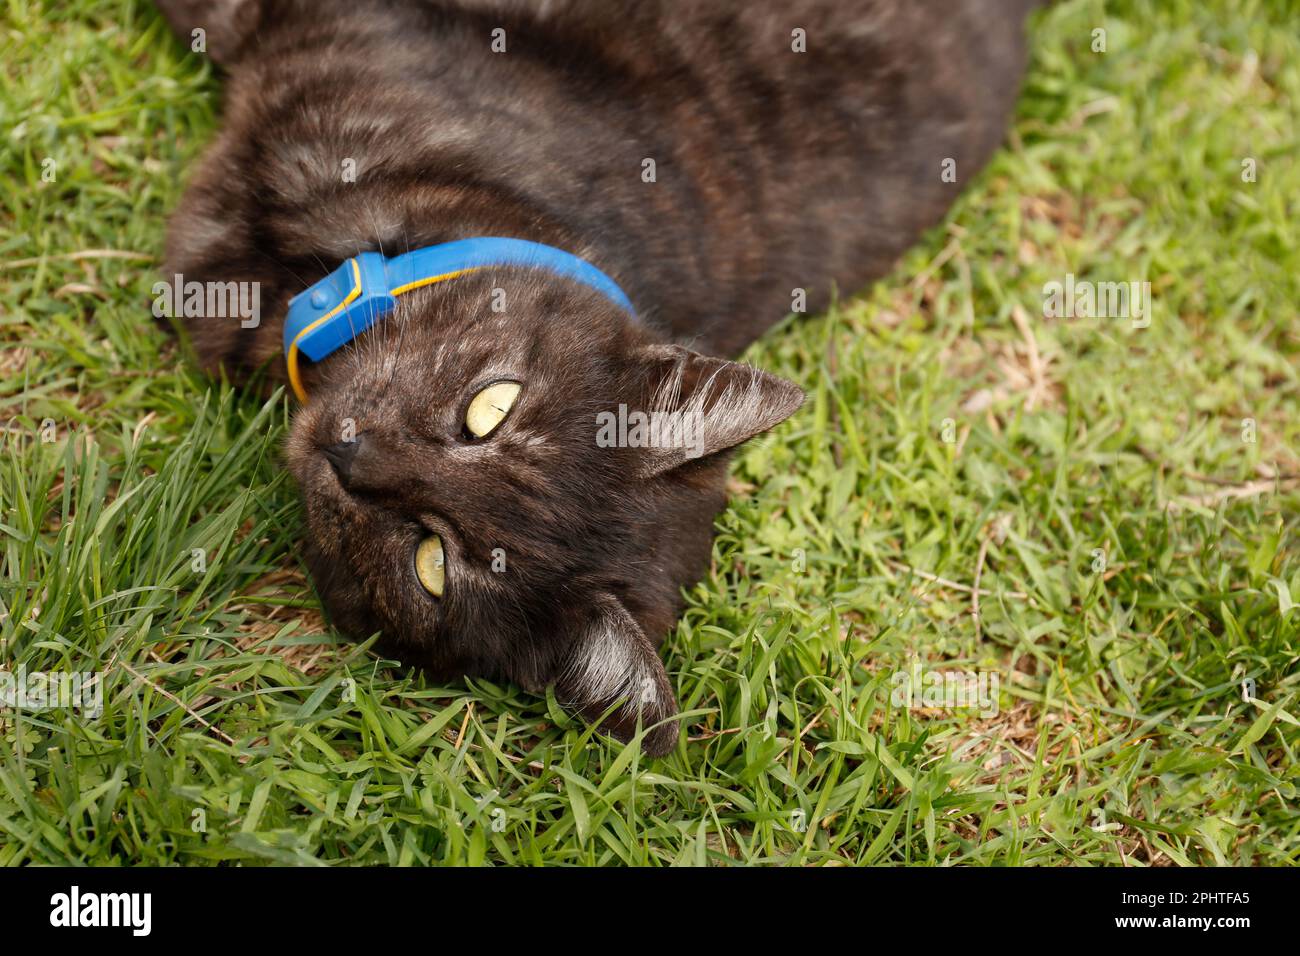 Adorabile gatto scuro che riposa su erba verde all'aperto, primo piano Foto Stock